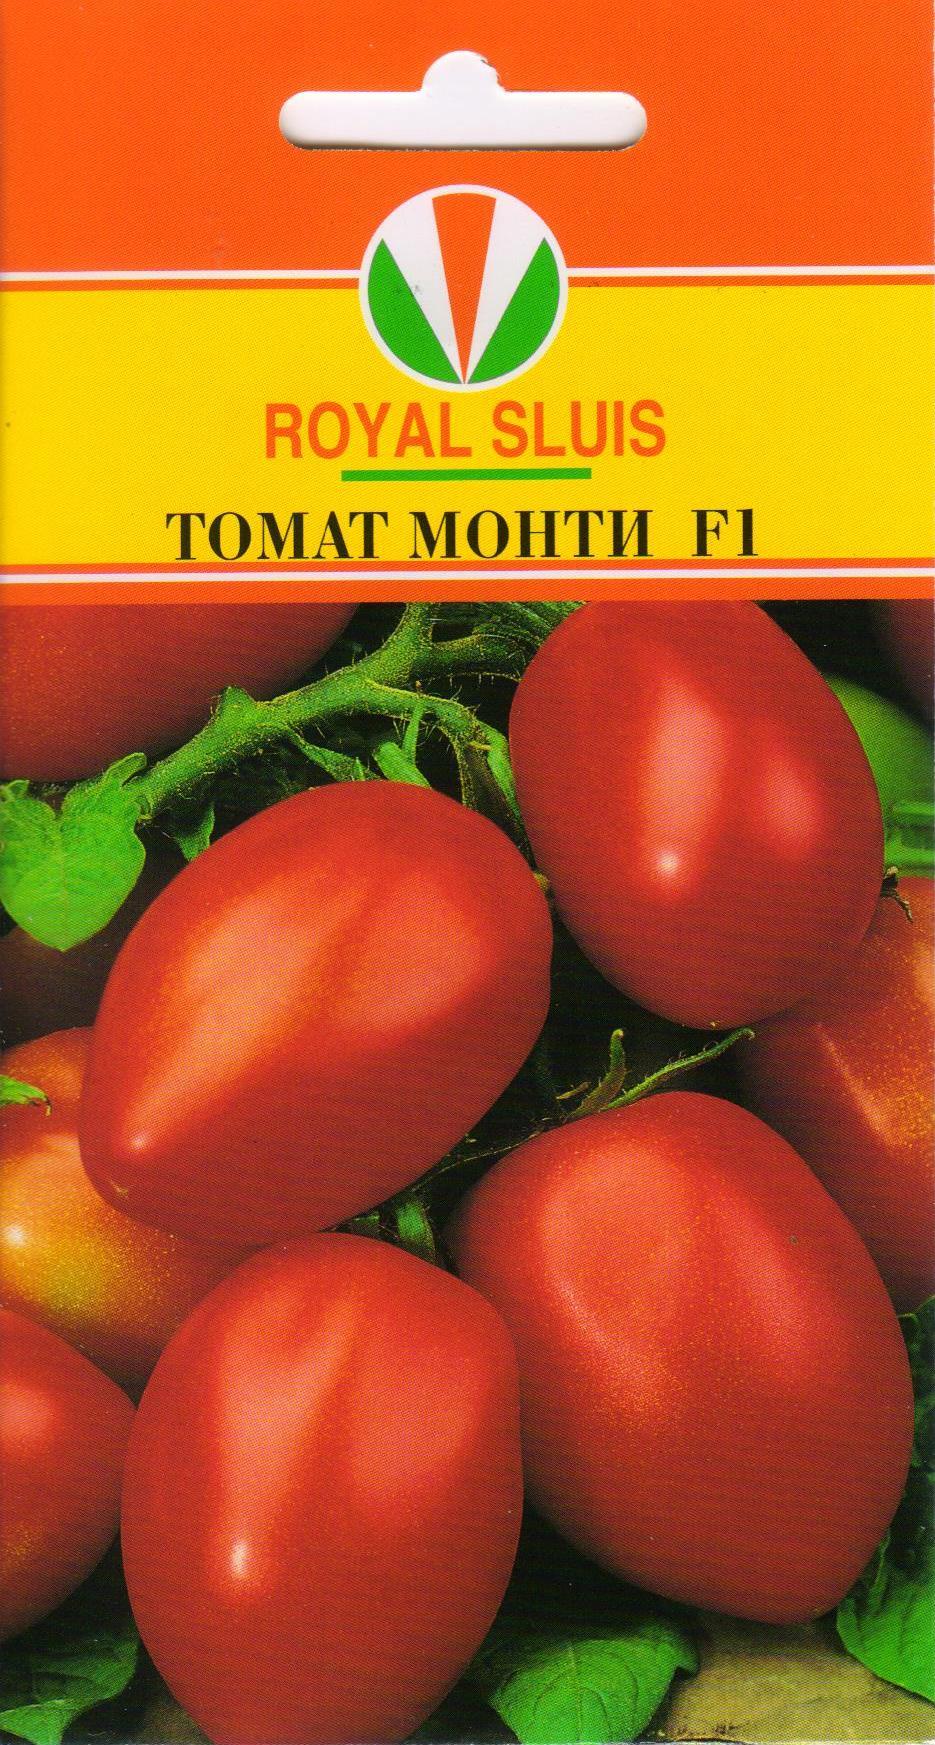 Описание и характеристика гибридного сорта томата яки f1